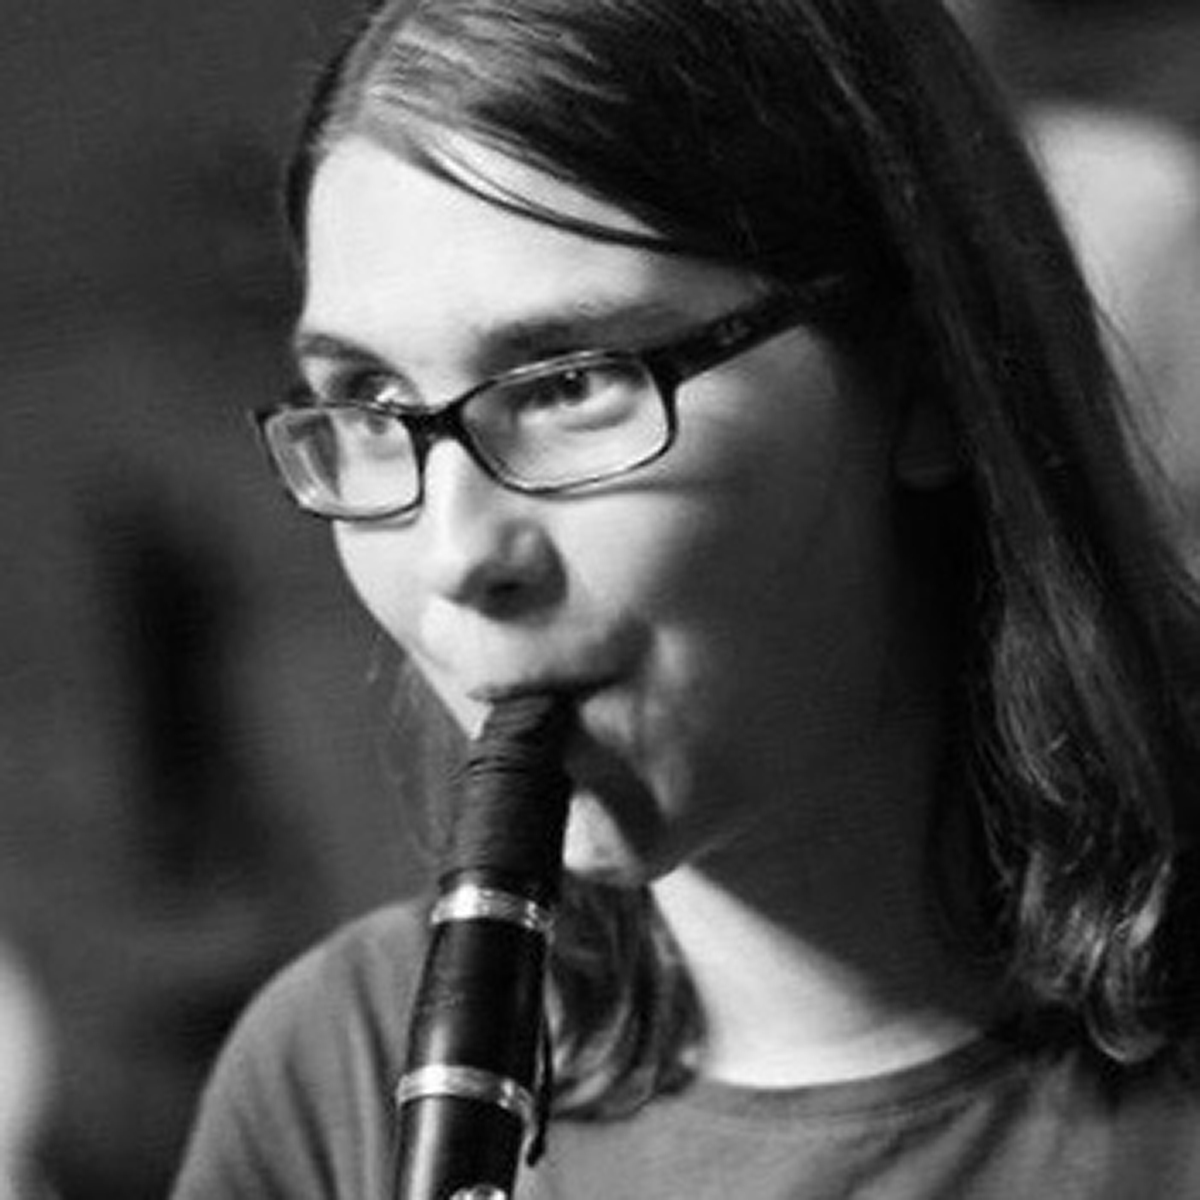 Hannah spielt im Klezmerorchester Klarinette und Kontrabass und ist seit vielen Jahren in der Klezmerszene aktiv. Den Verein unterstützt sie u. a. durch Recherchen und das Erstellen von Programmheften.